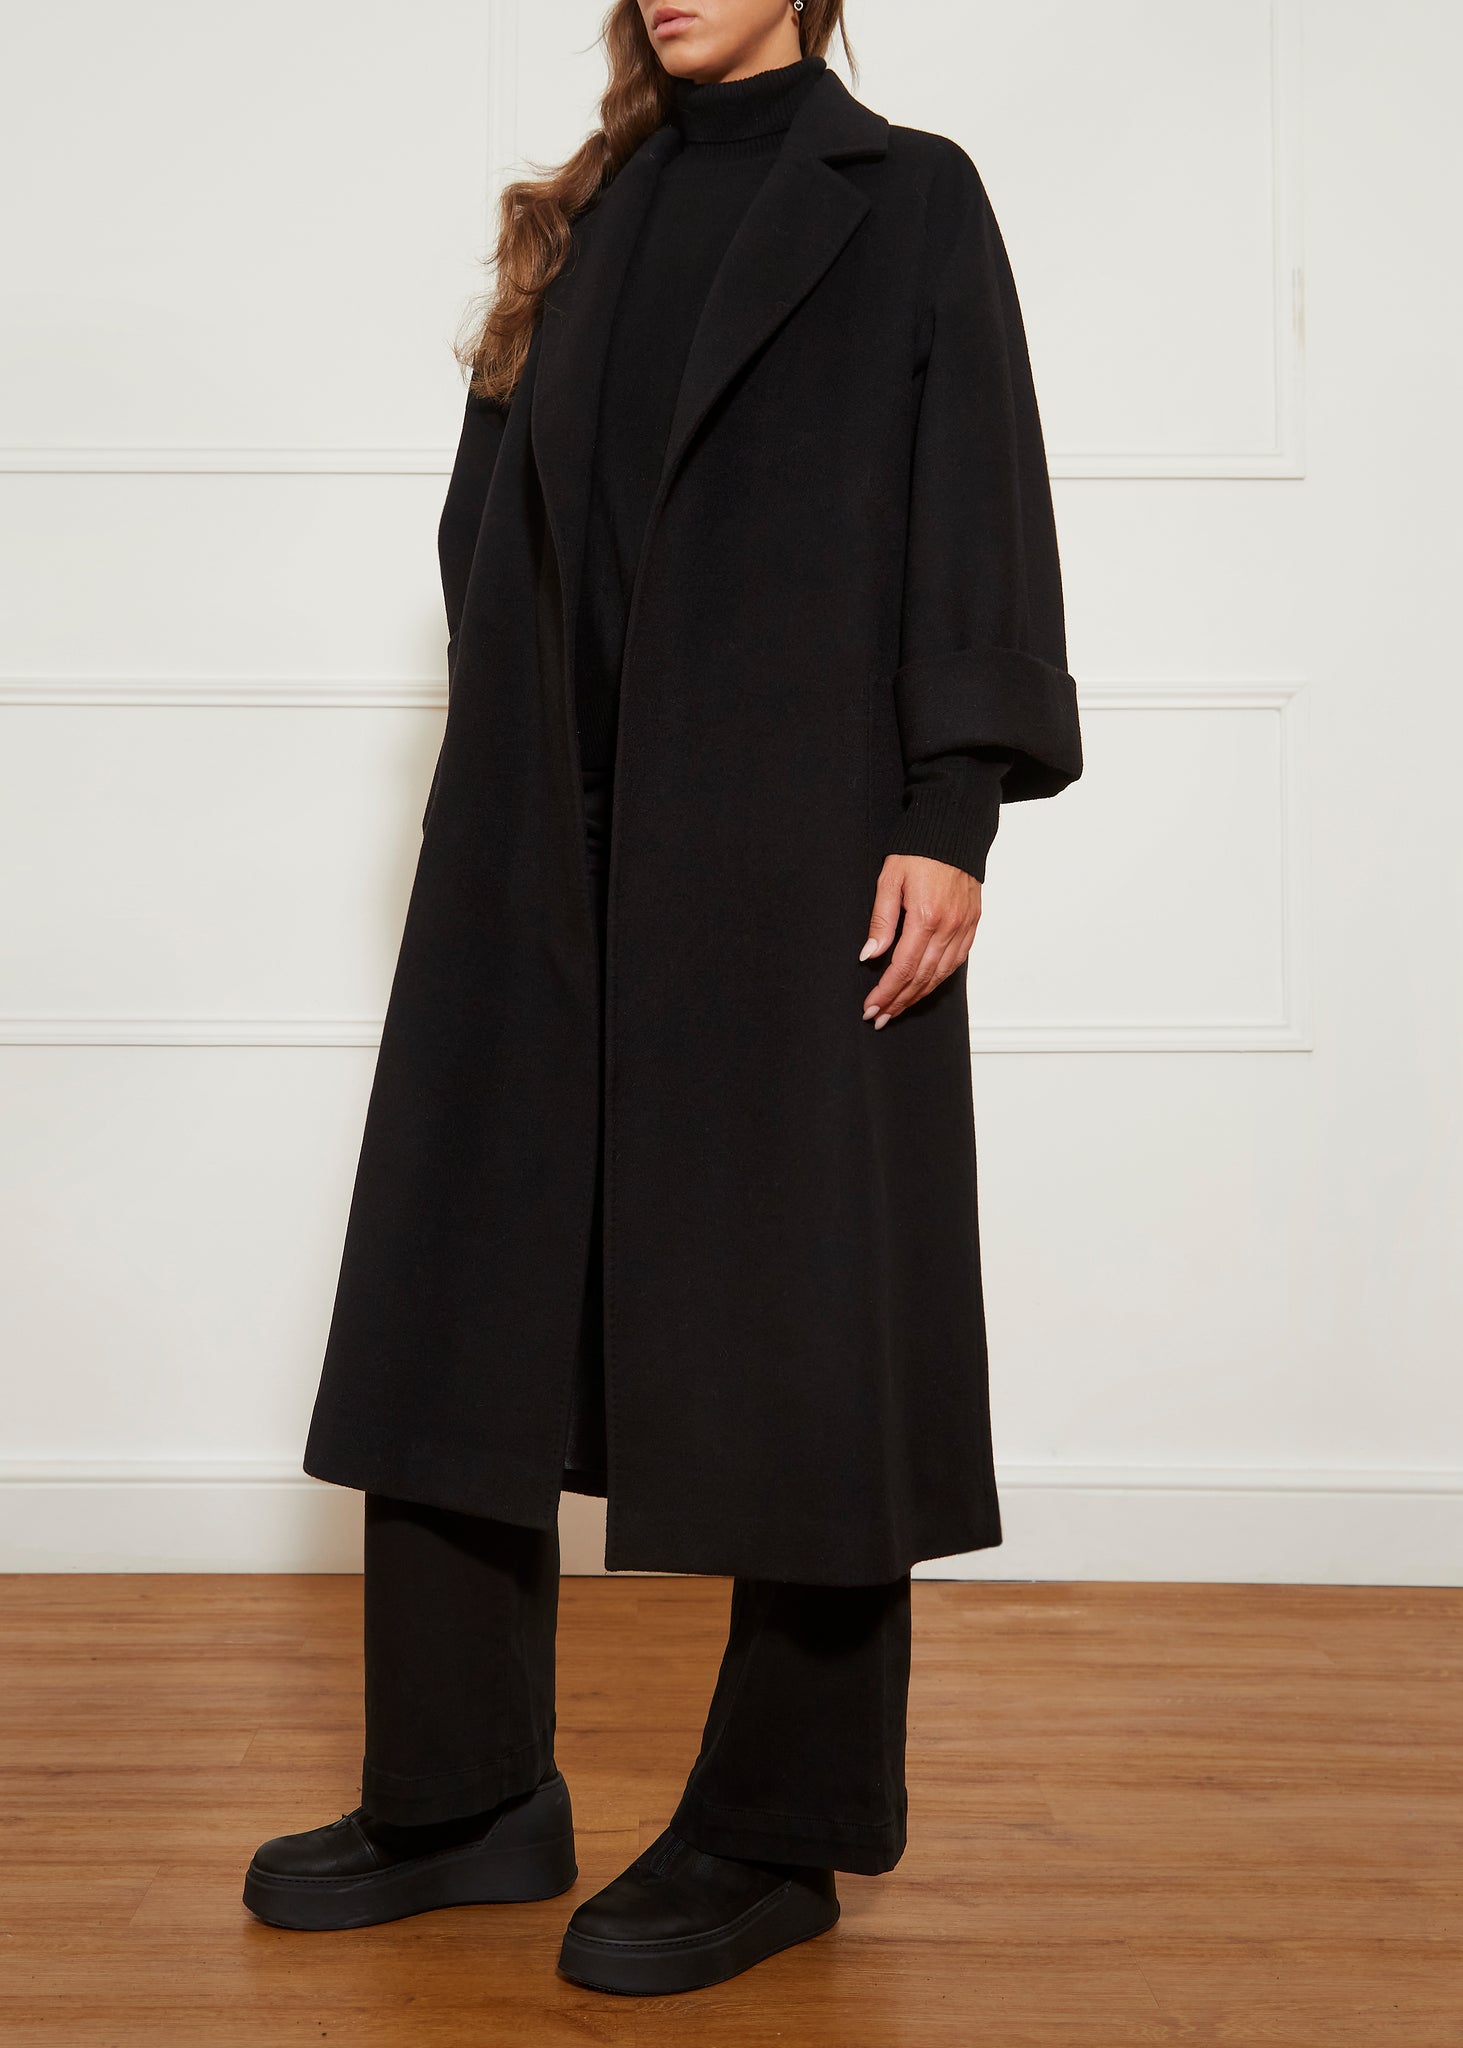 Black Wool Long Open Coat